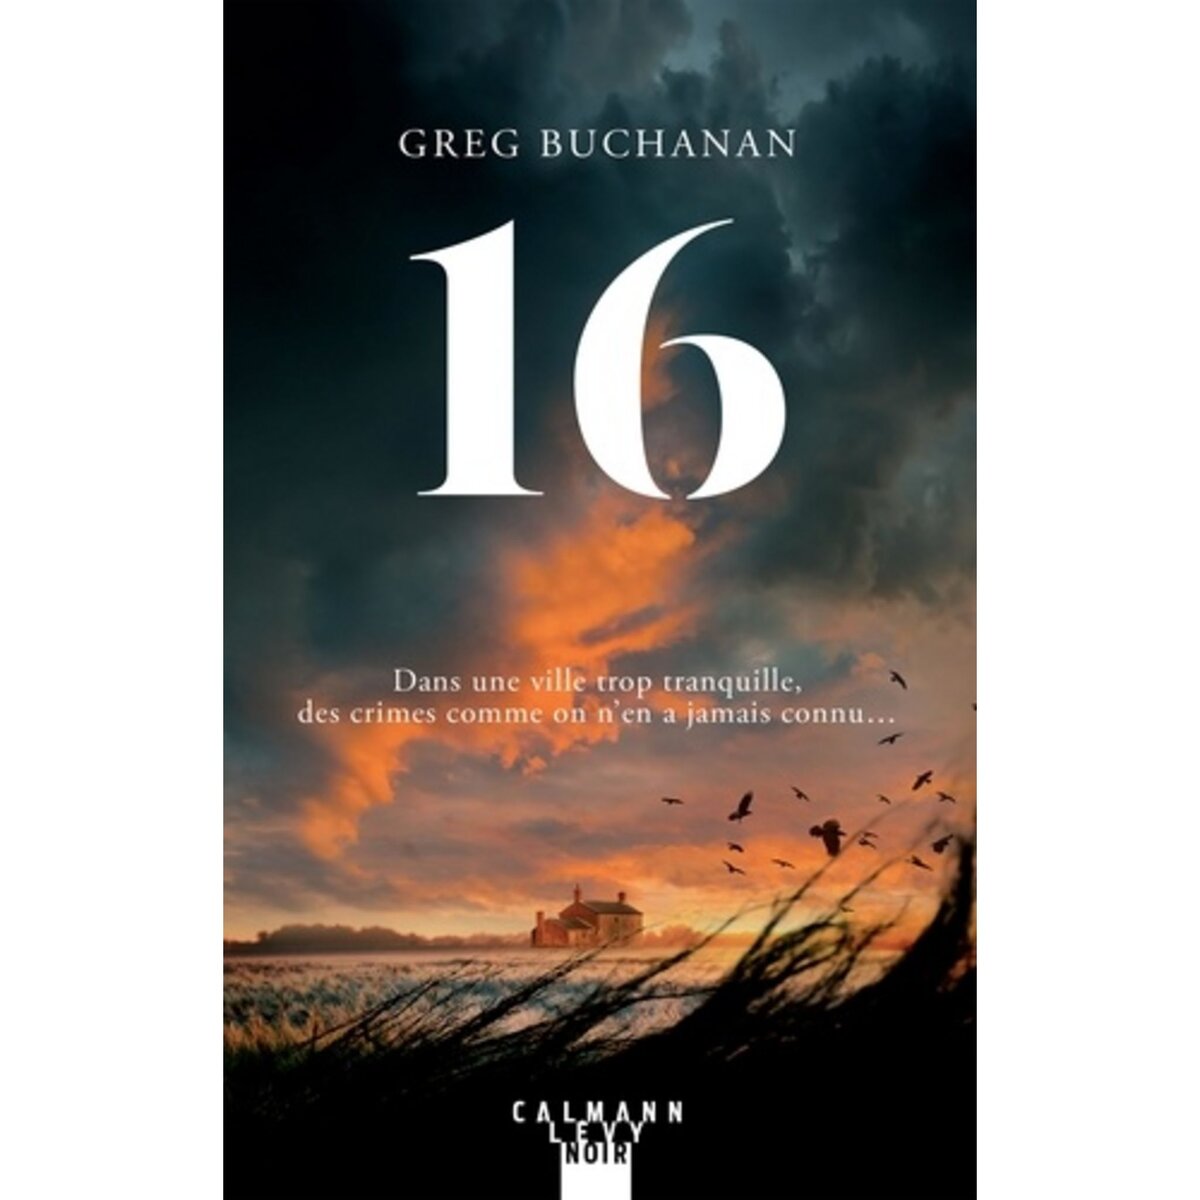  16, Buchanan Greg